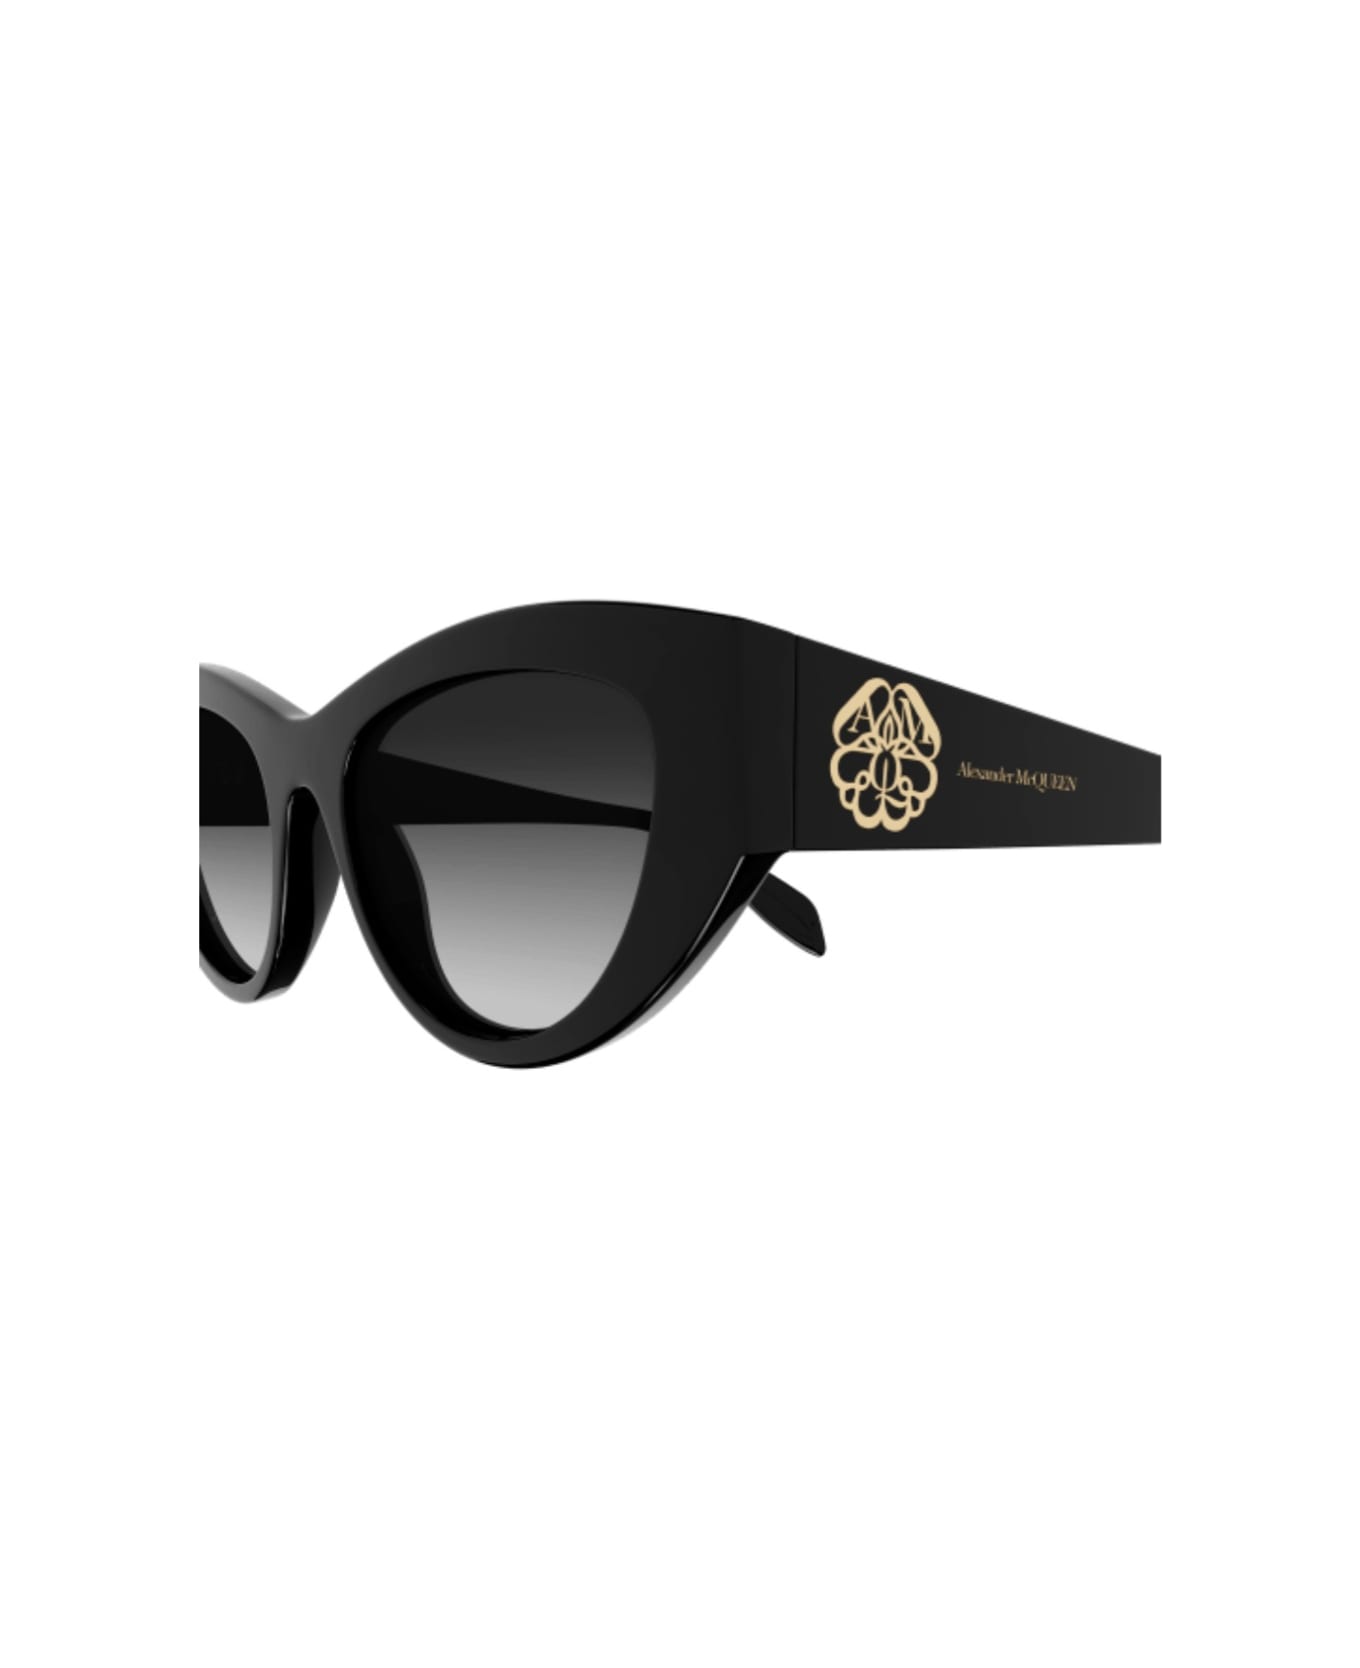 Alexander McQueen Eyewear AM0377s 001 Sunglasses